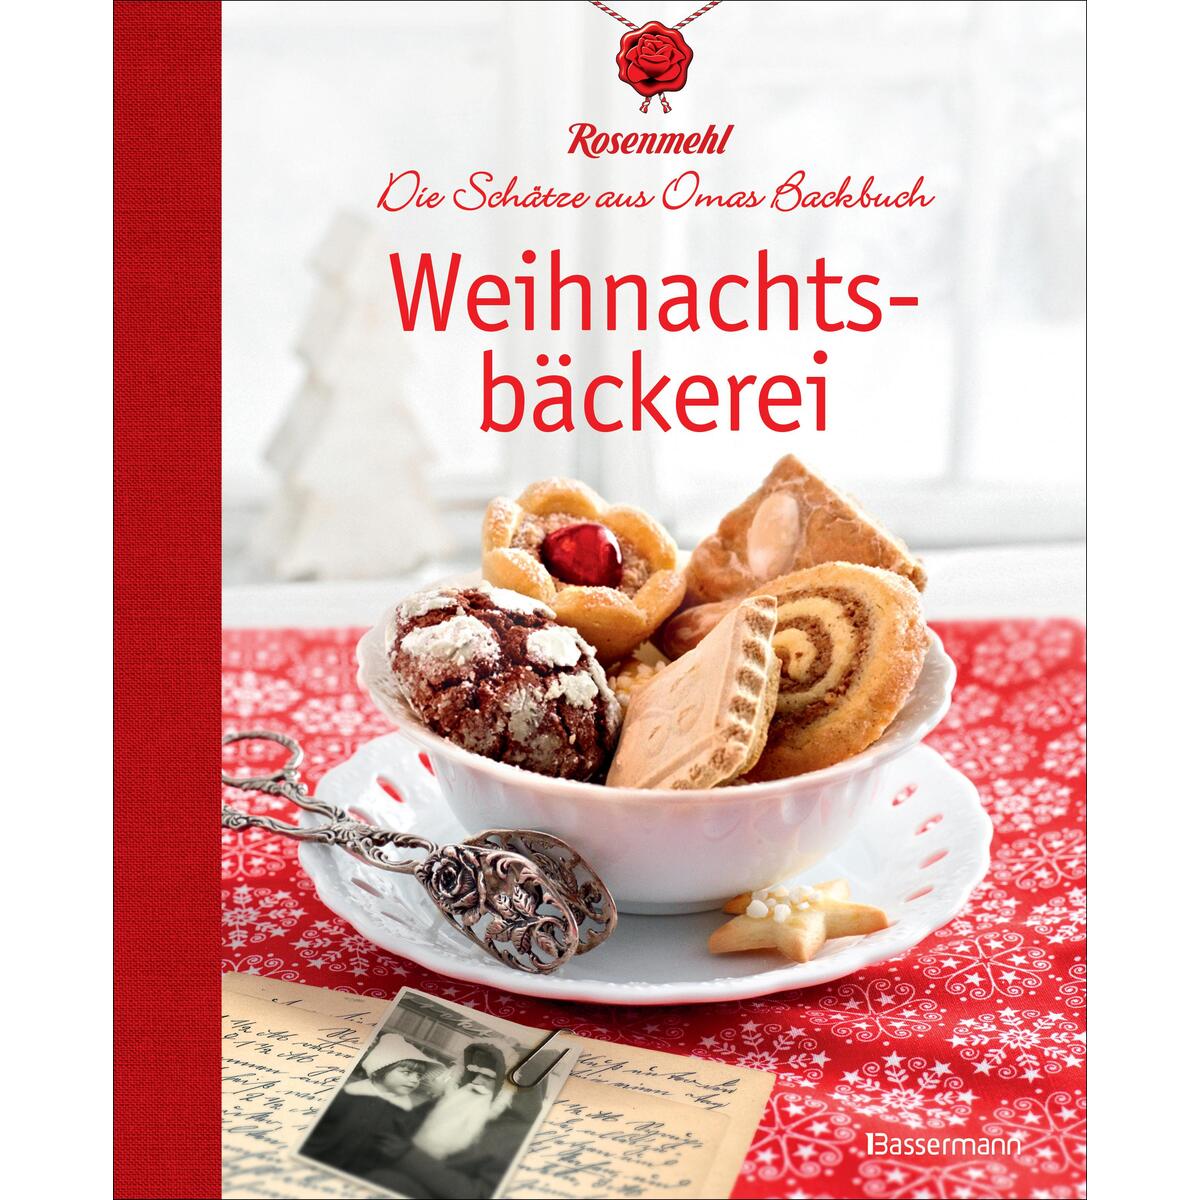 Weihnachtsbäckerei von Bassermann, Edition